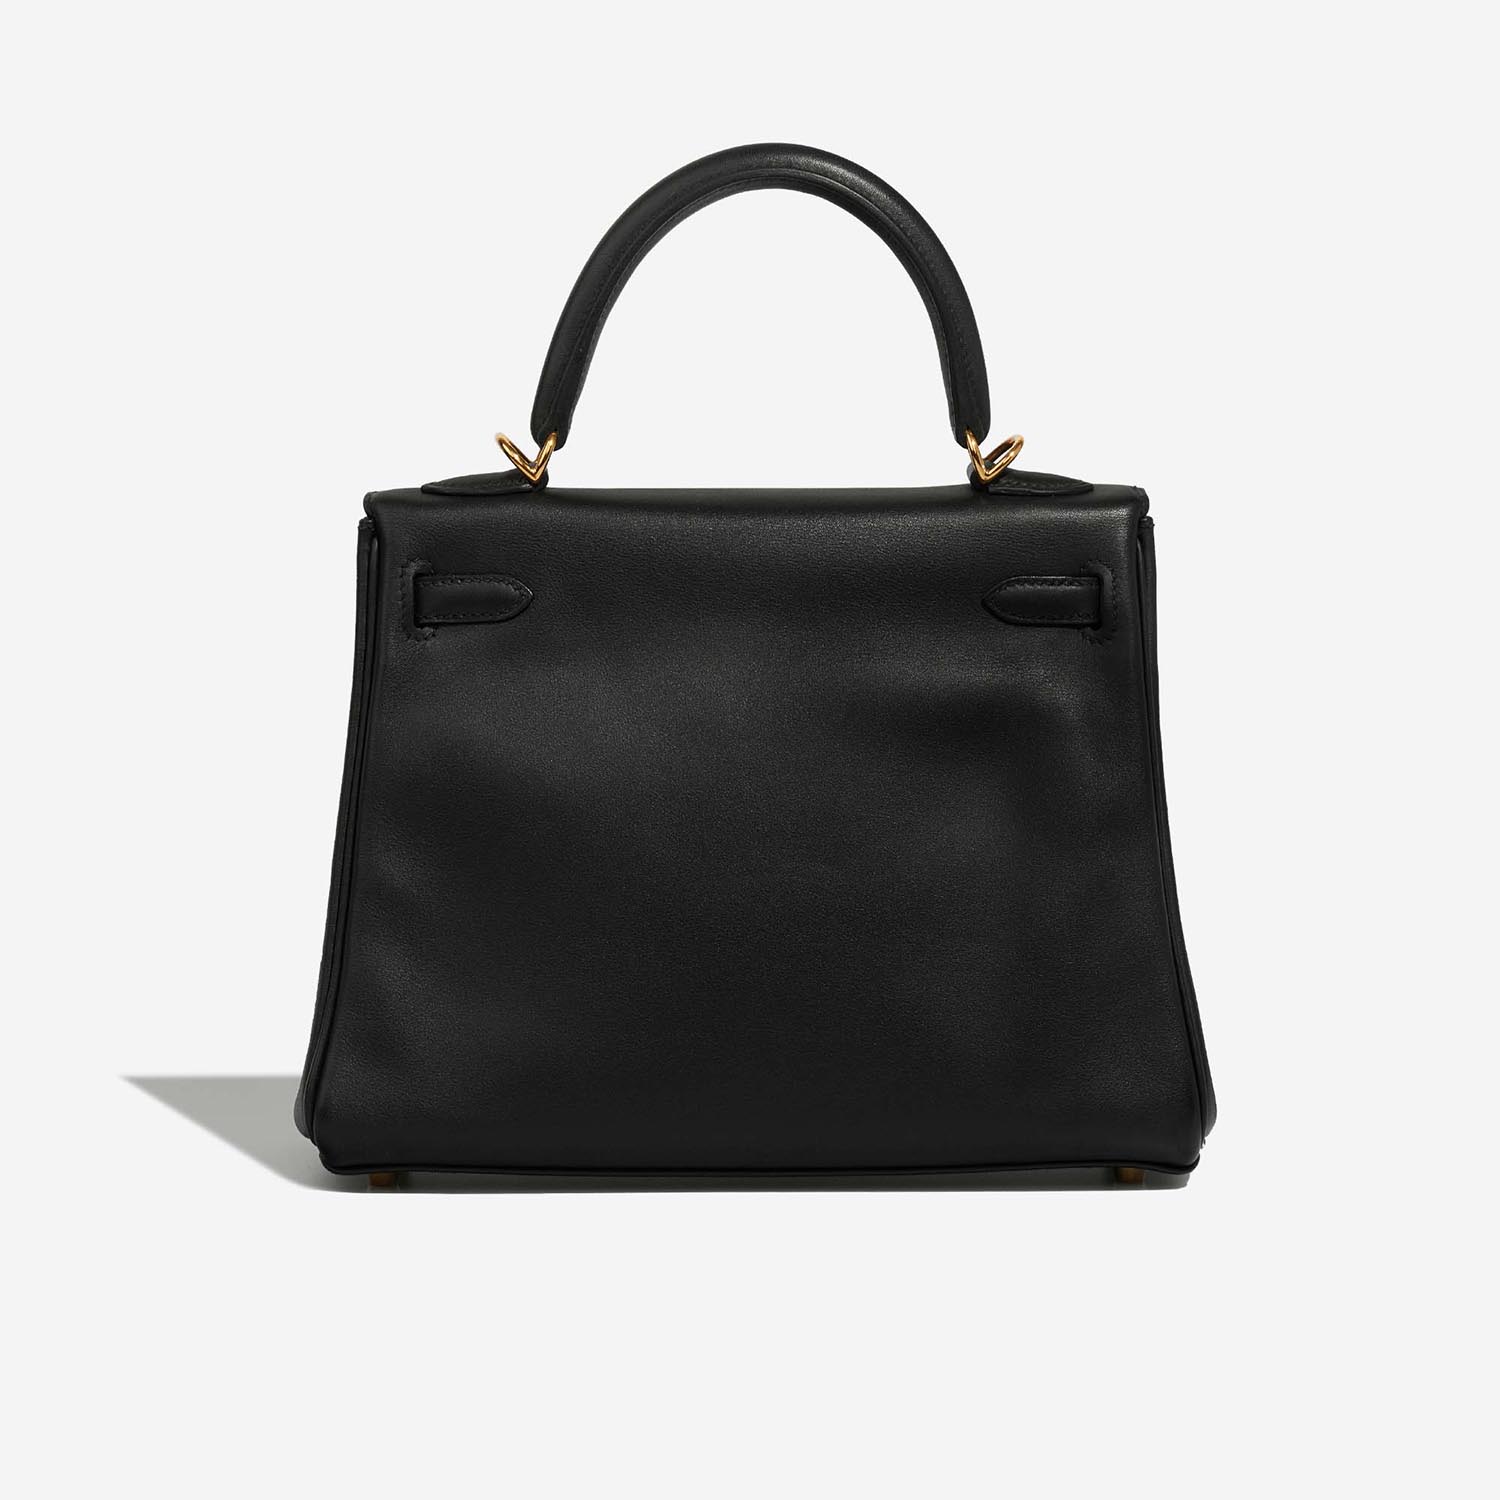 Hermès Kelly 25 Black Back | Verkaufen Sie Ihre Designertasche auf Saclab.com